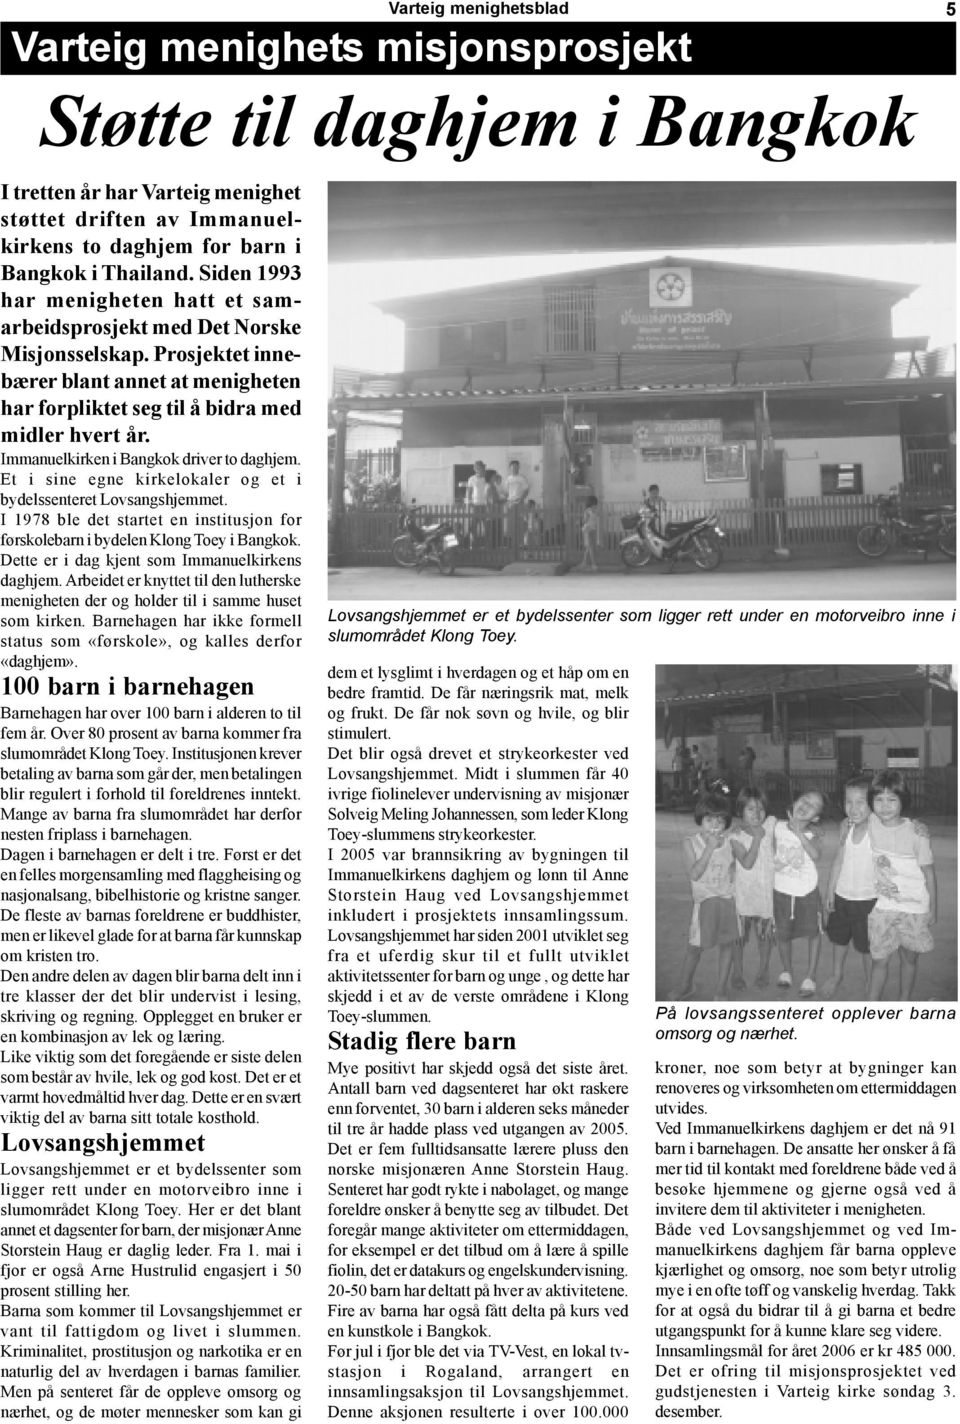 Immanuelkirken i Bangkok driver to daghjem. Et i sine egne kirkelokaler og et i bydelssenteret Lovsangshjemmet. I 1978 ble det startet en institusjon for førskolebarn i bydelen Klong Toey i Bangkok.